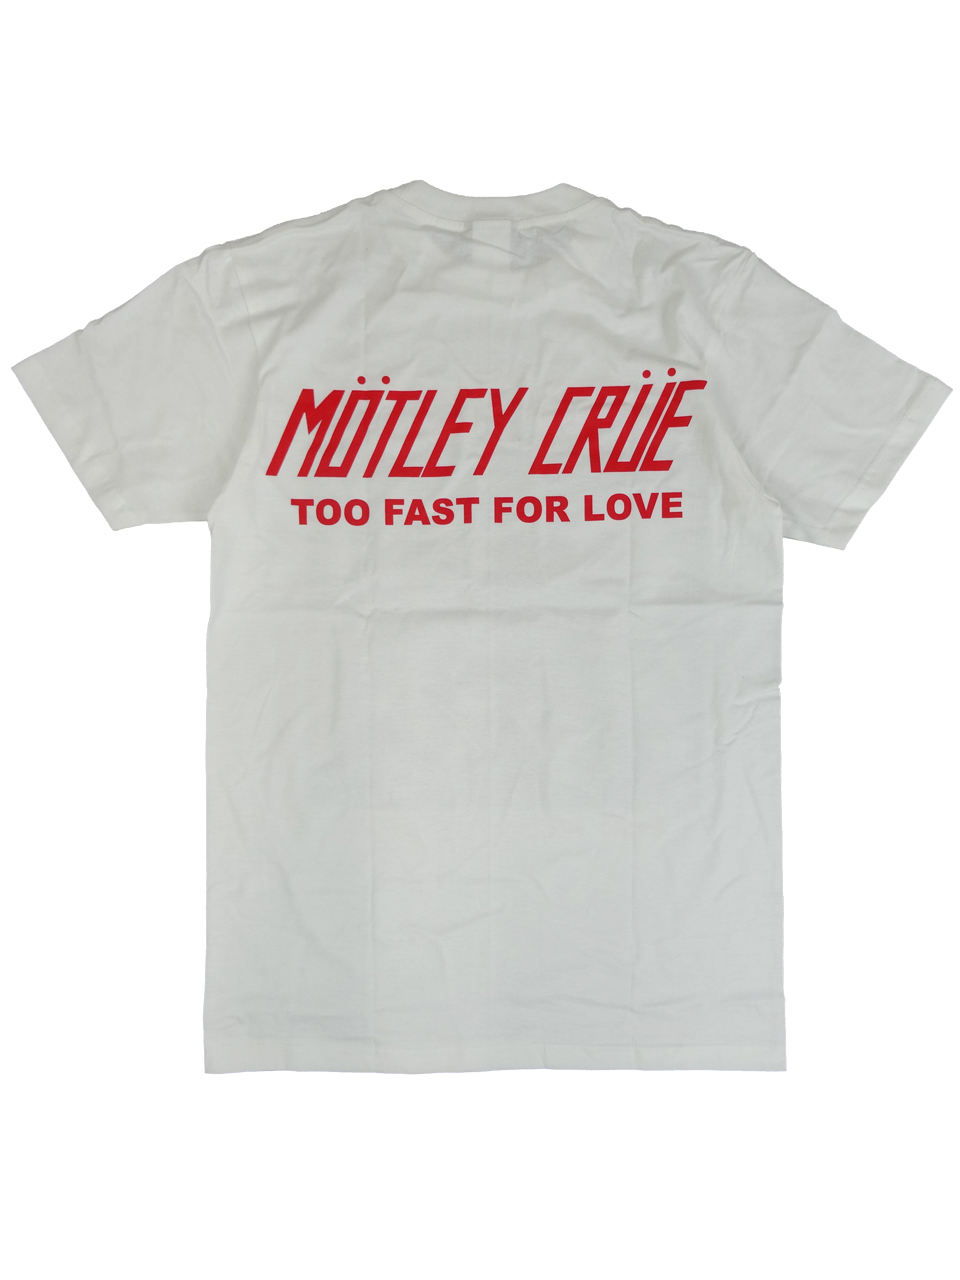 モトリー・クルー Tシャツ TOO FAST FOR LOVEMOTLEY_CRUE